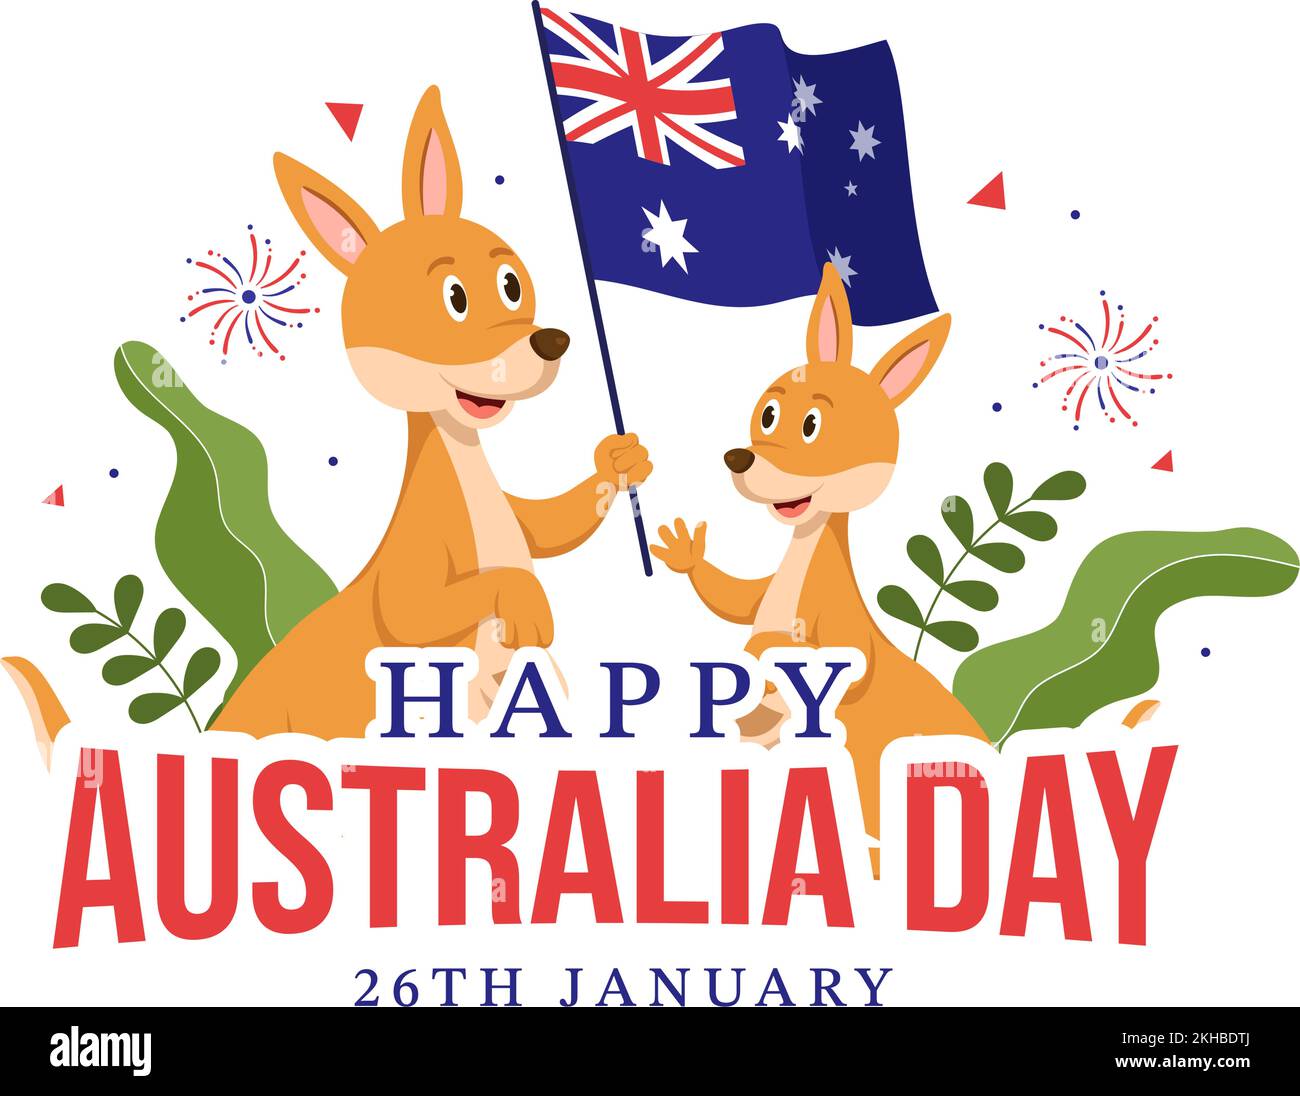 Happy Australia Day findet jedes Jahr am 26.. Januar mit Flaggen und Kängurus in der flachen, handgezogenen Schablone statt Stock Vektor